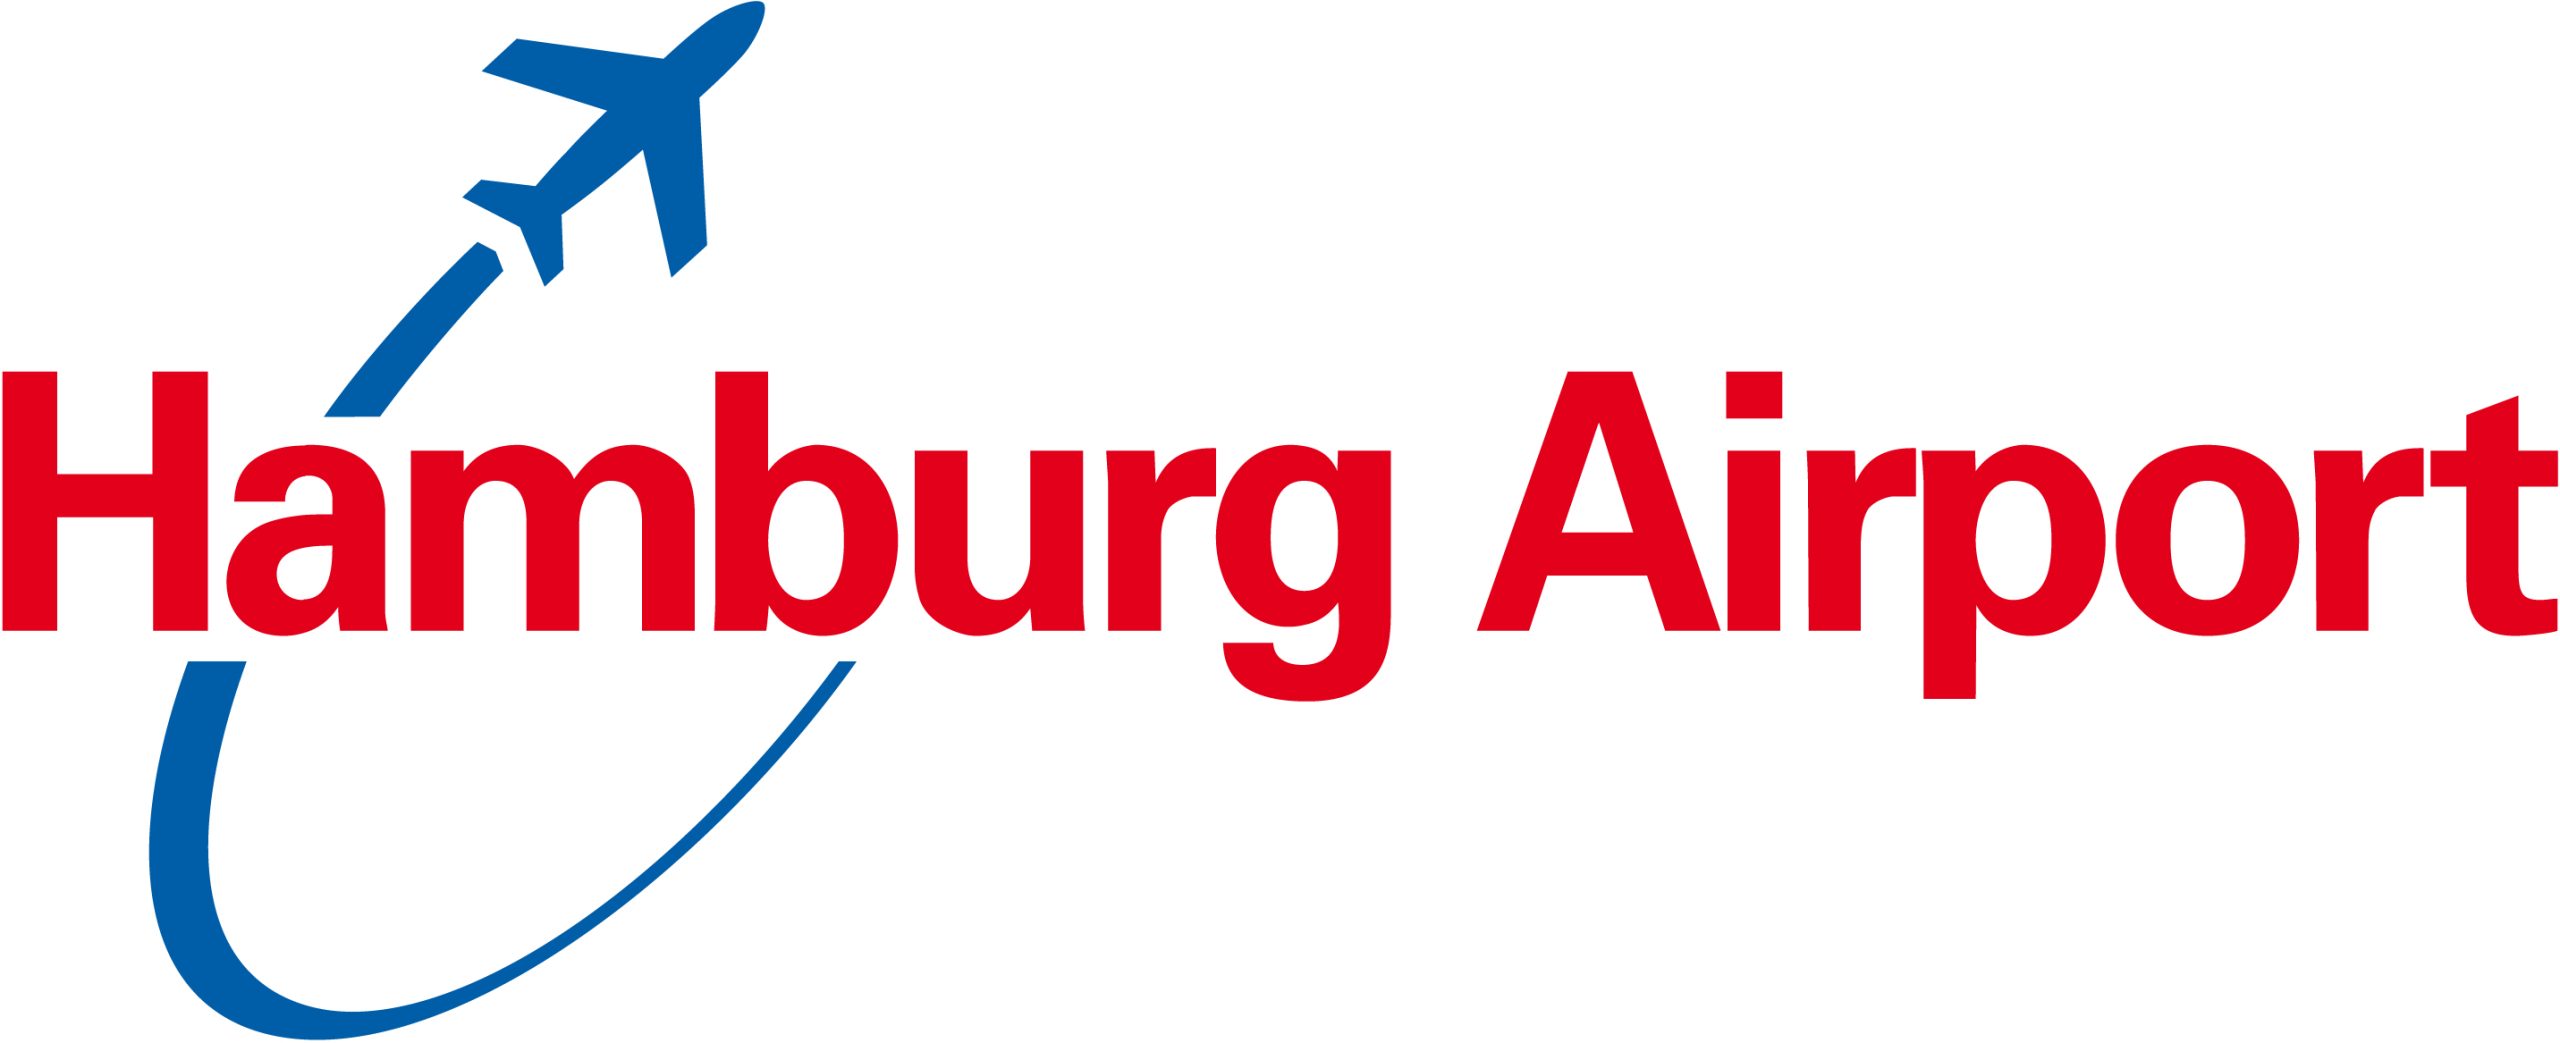 Hamburg Airport Logo